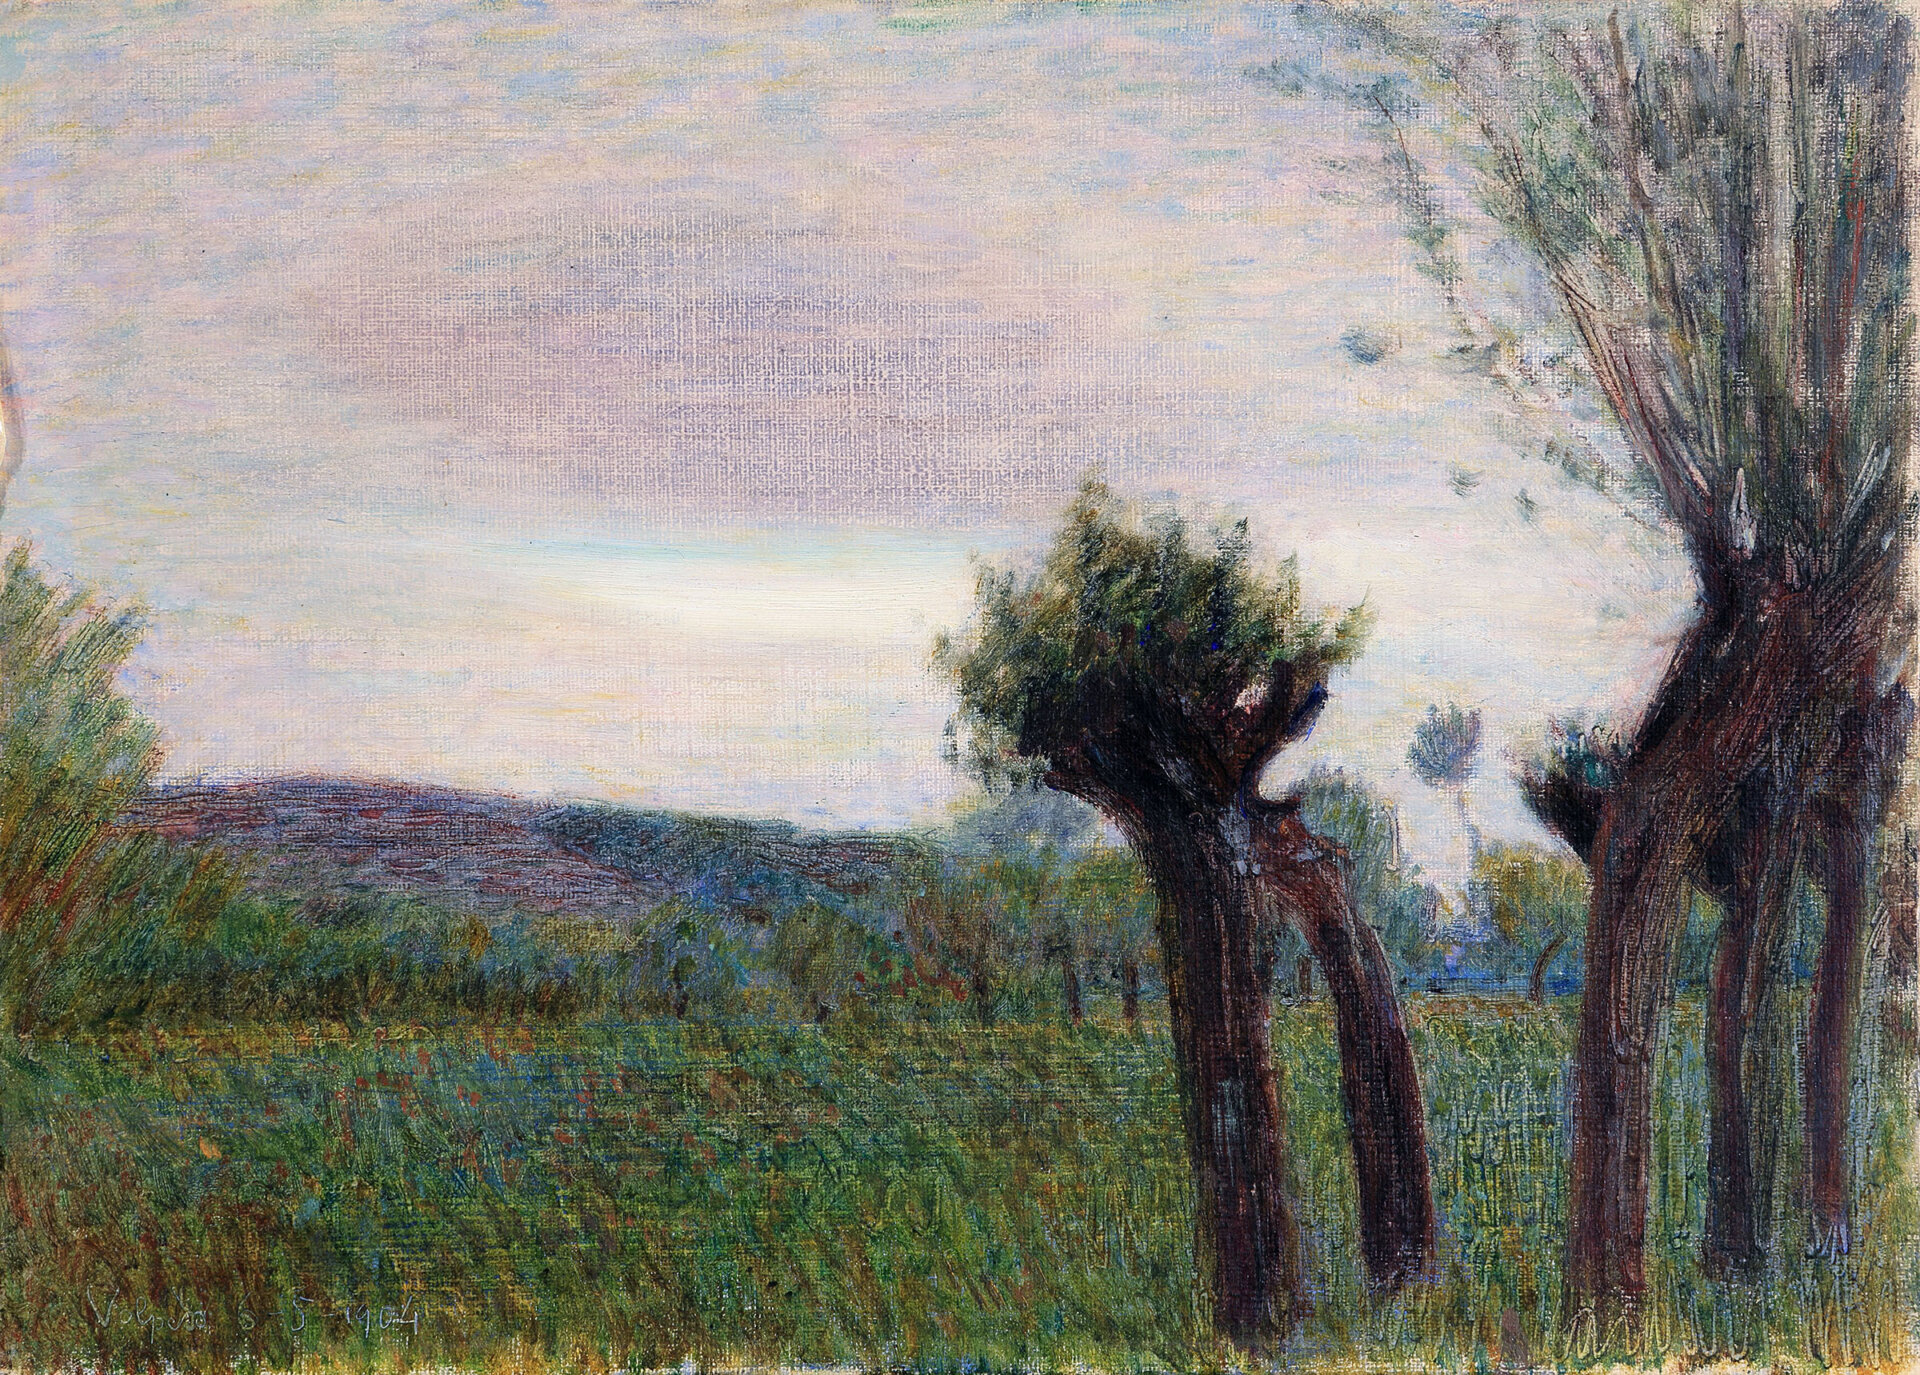 Giuseppe-Pellizza-da-Volpedo-Paesaggio-di-piante-sul-prato-1904-olio-su-cartone-254-x-355-cm-collezione-privata-courtesy-Enrico-Gallerie-dArte